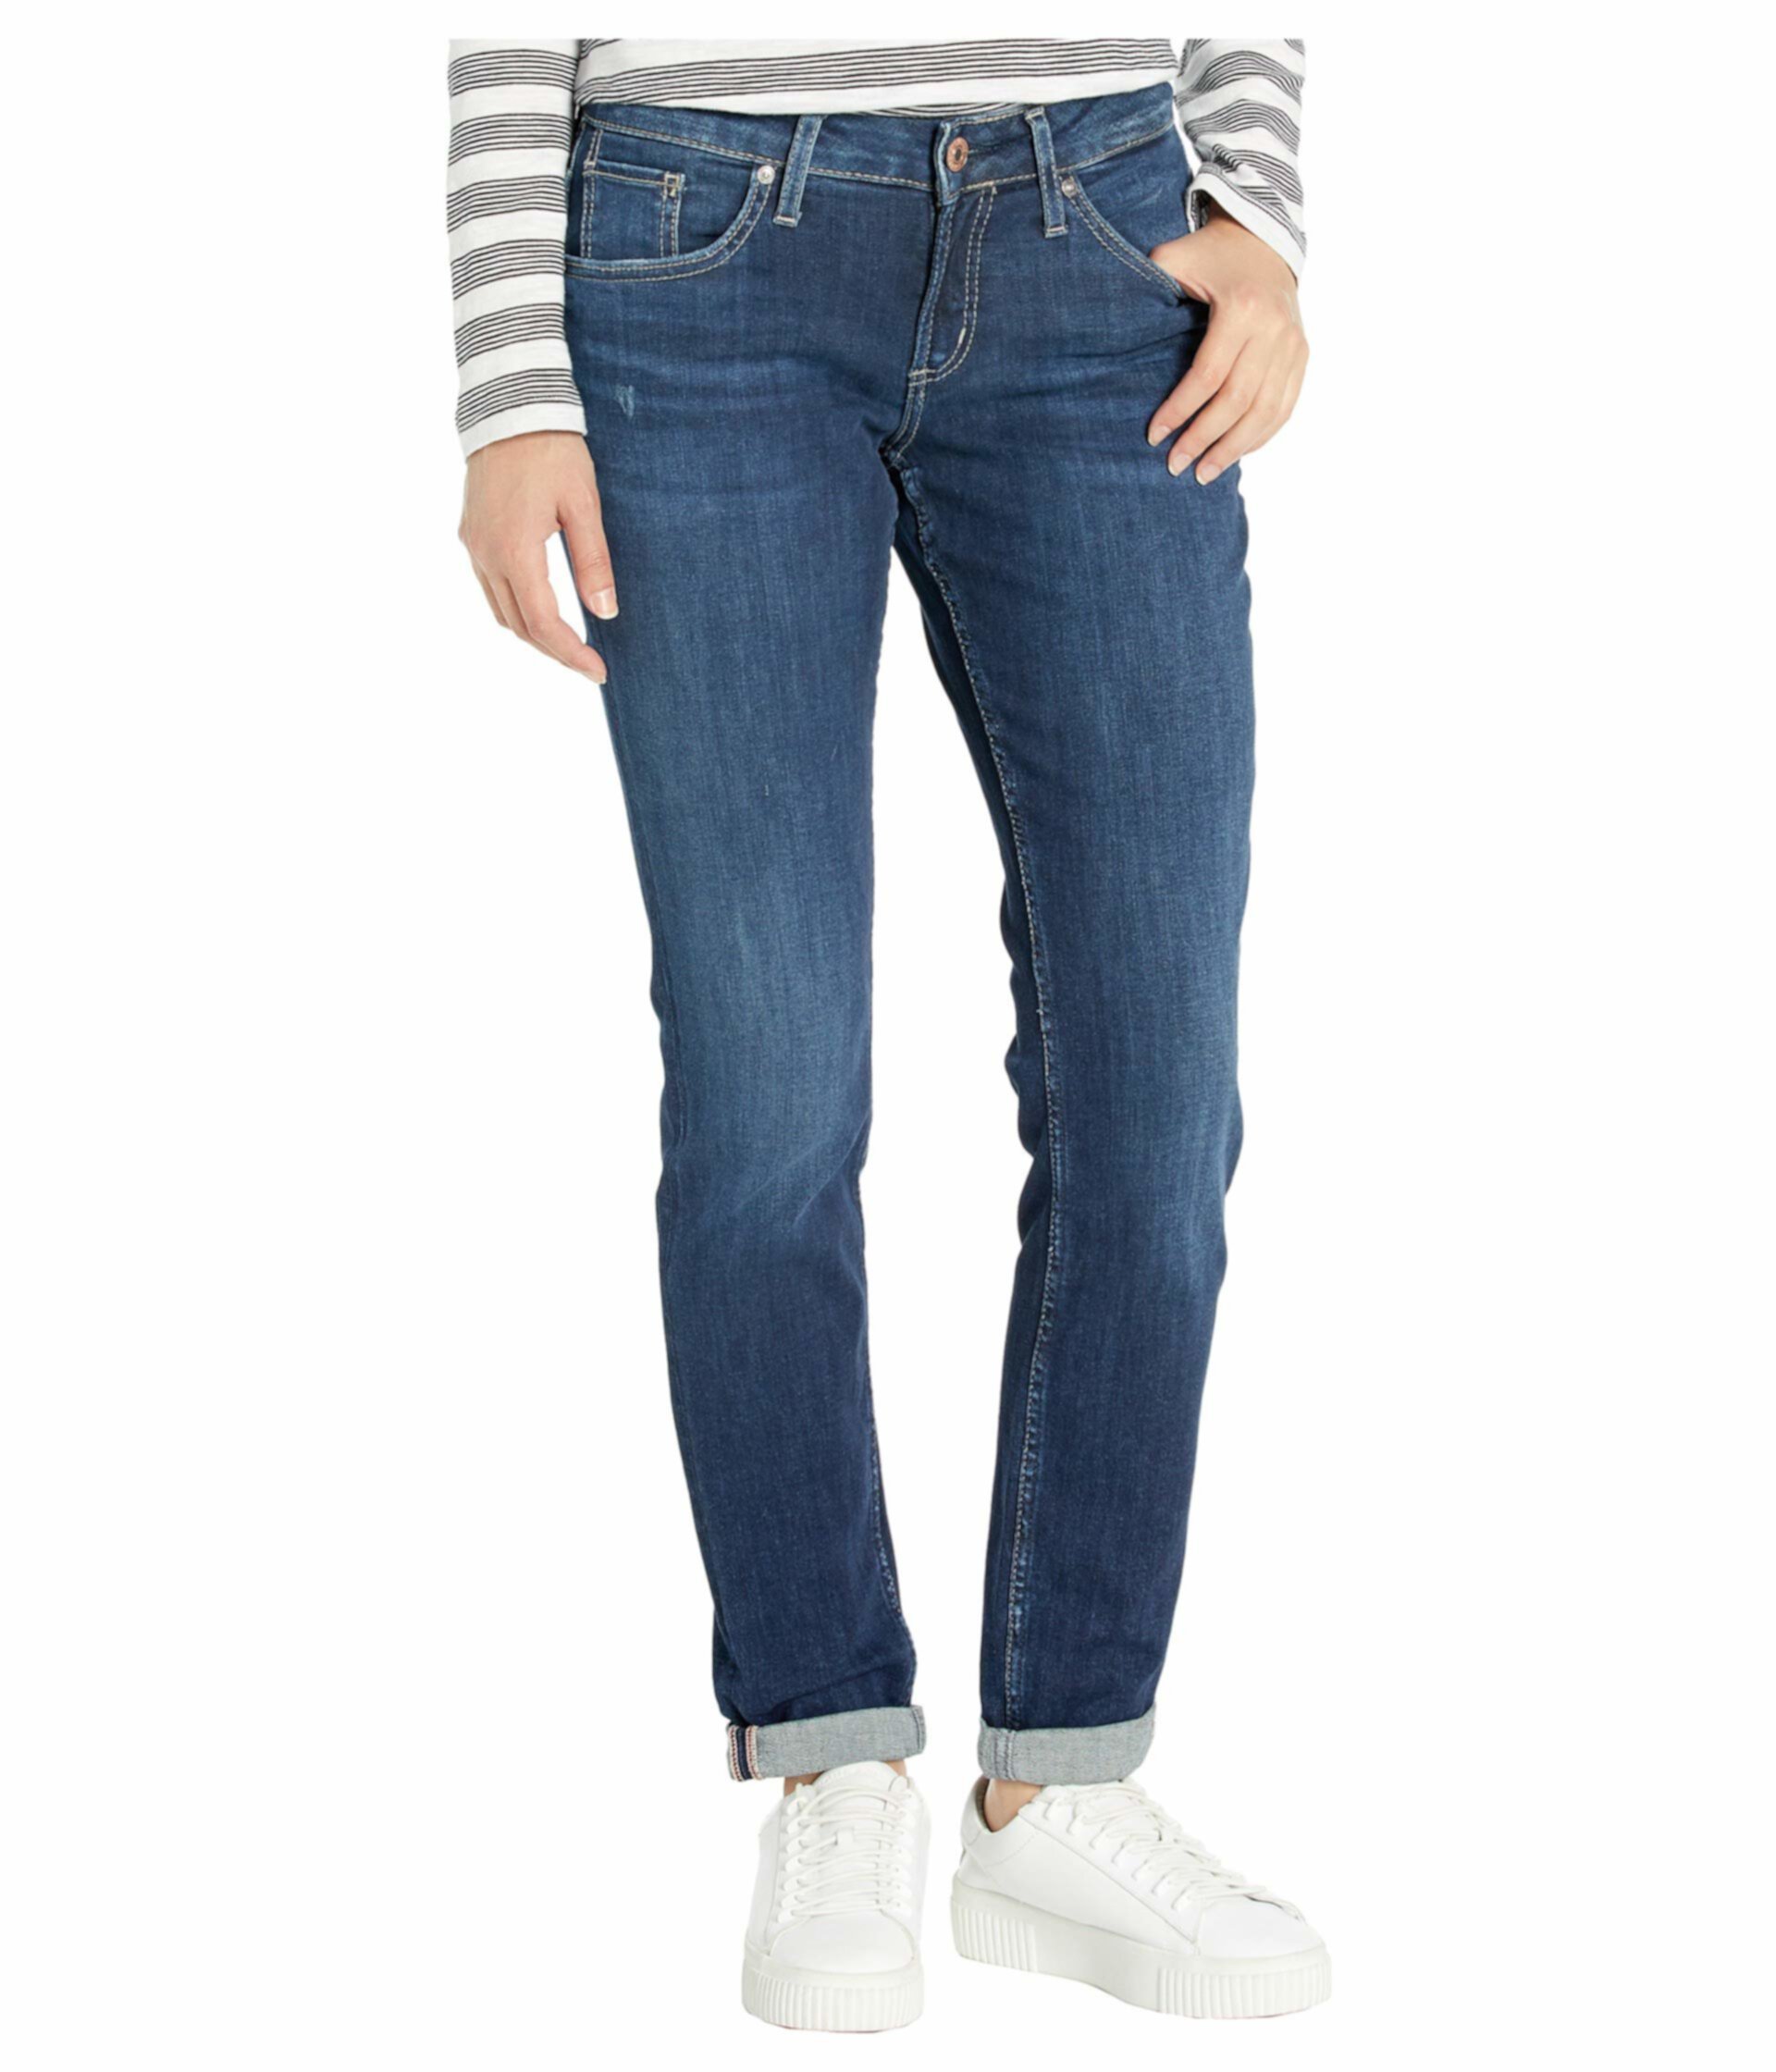 Зауженные джинсы бойфренда со средней посадкой цвета индиго L27101SSX365 Silver Jeans Co.